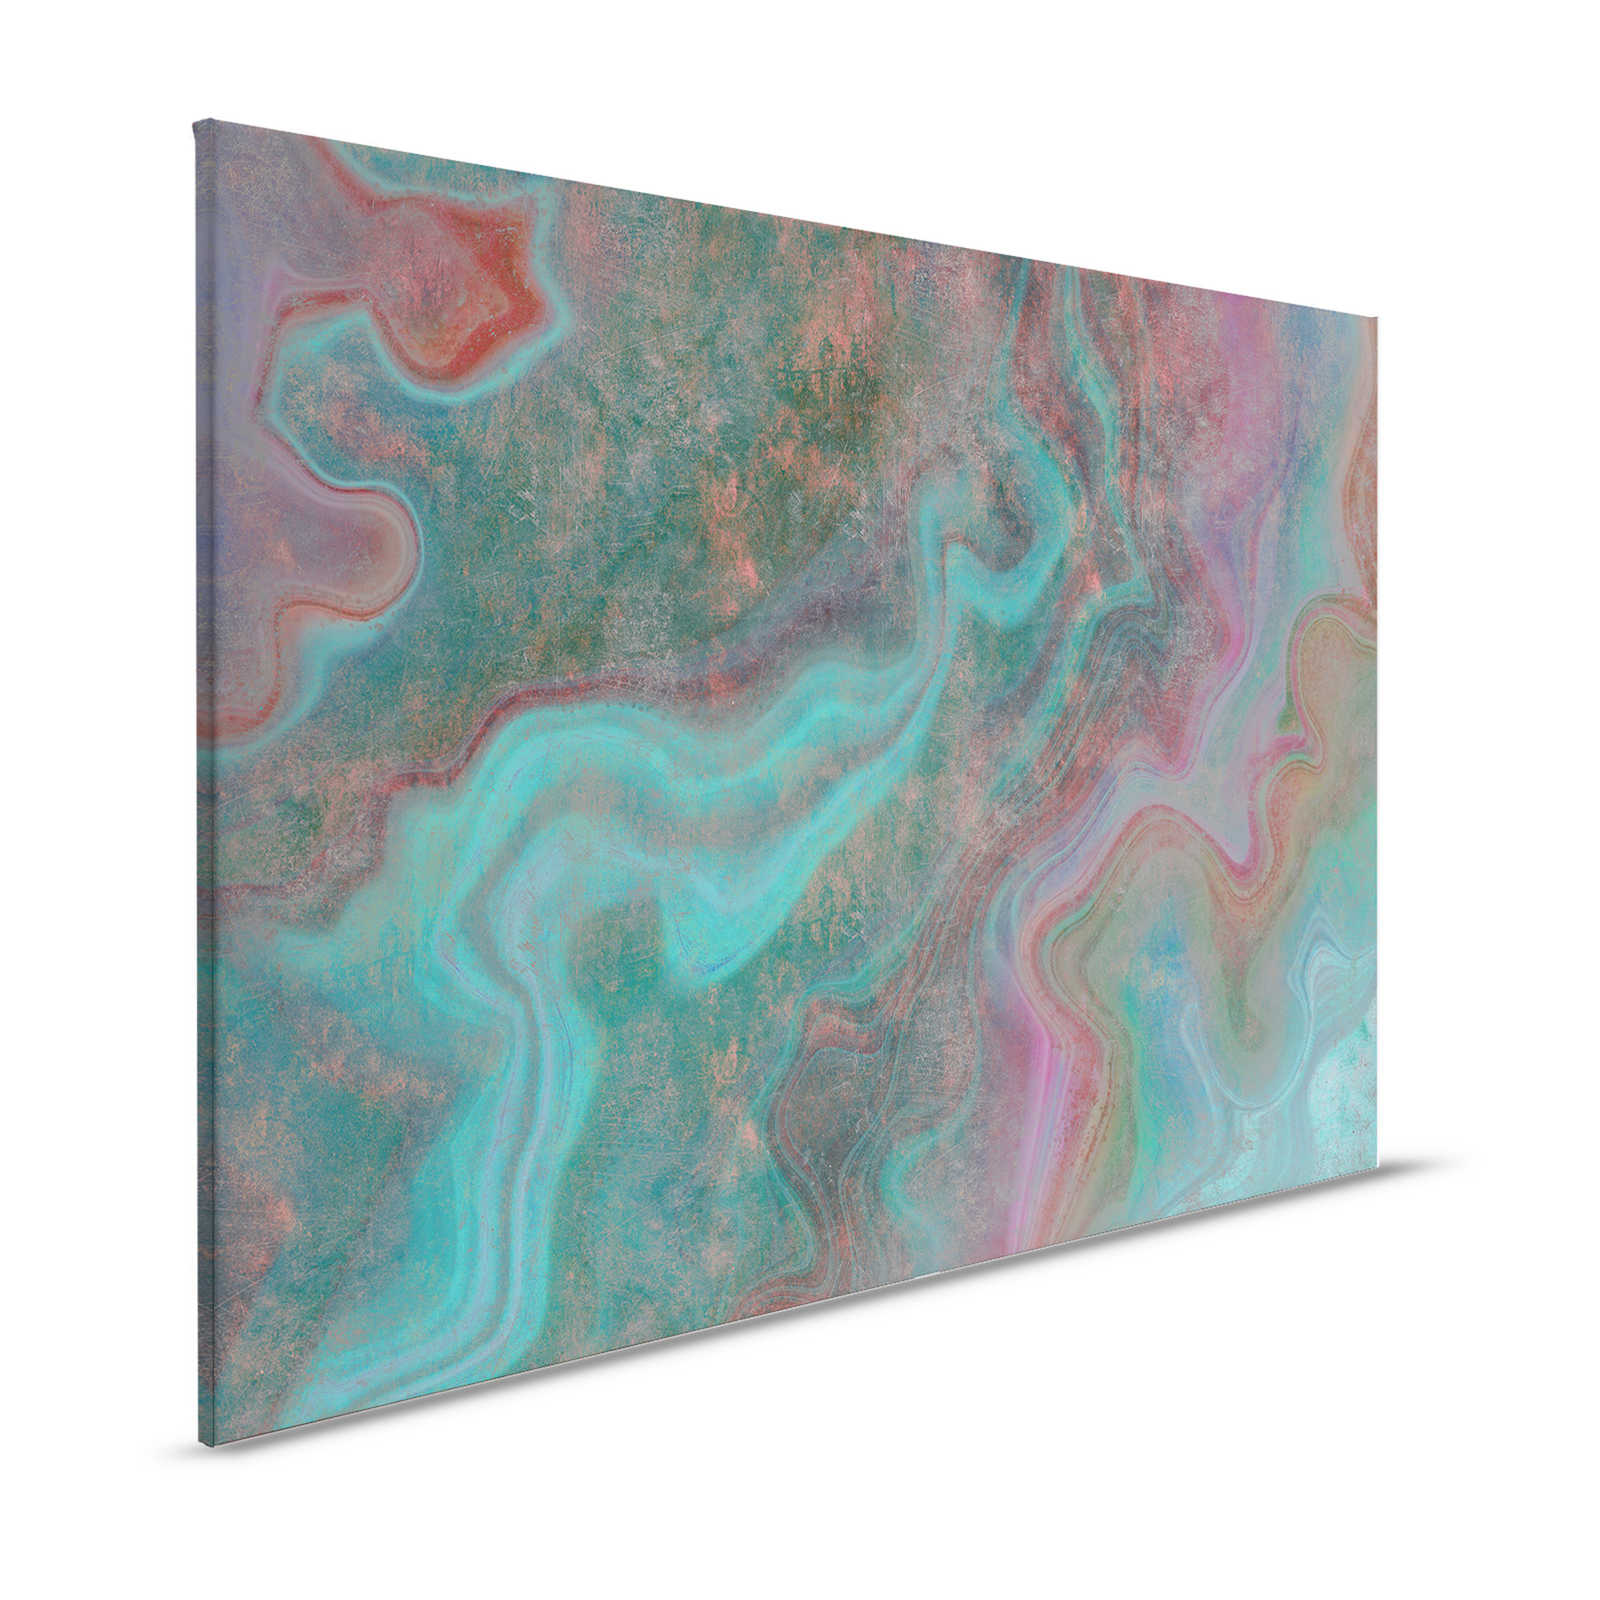 Marble 3 - Tableau sur toile avec structure rayée en aspect marbre coloré pour mettre en valeur - 1,20 m x 0,80 m
